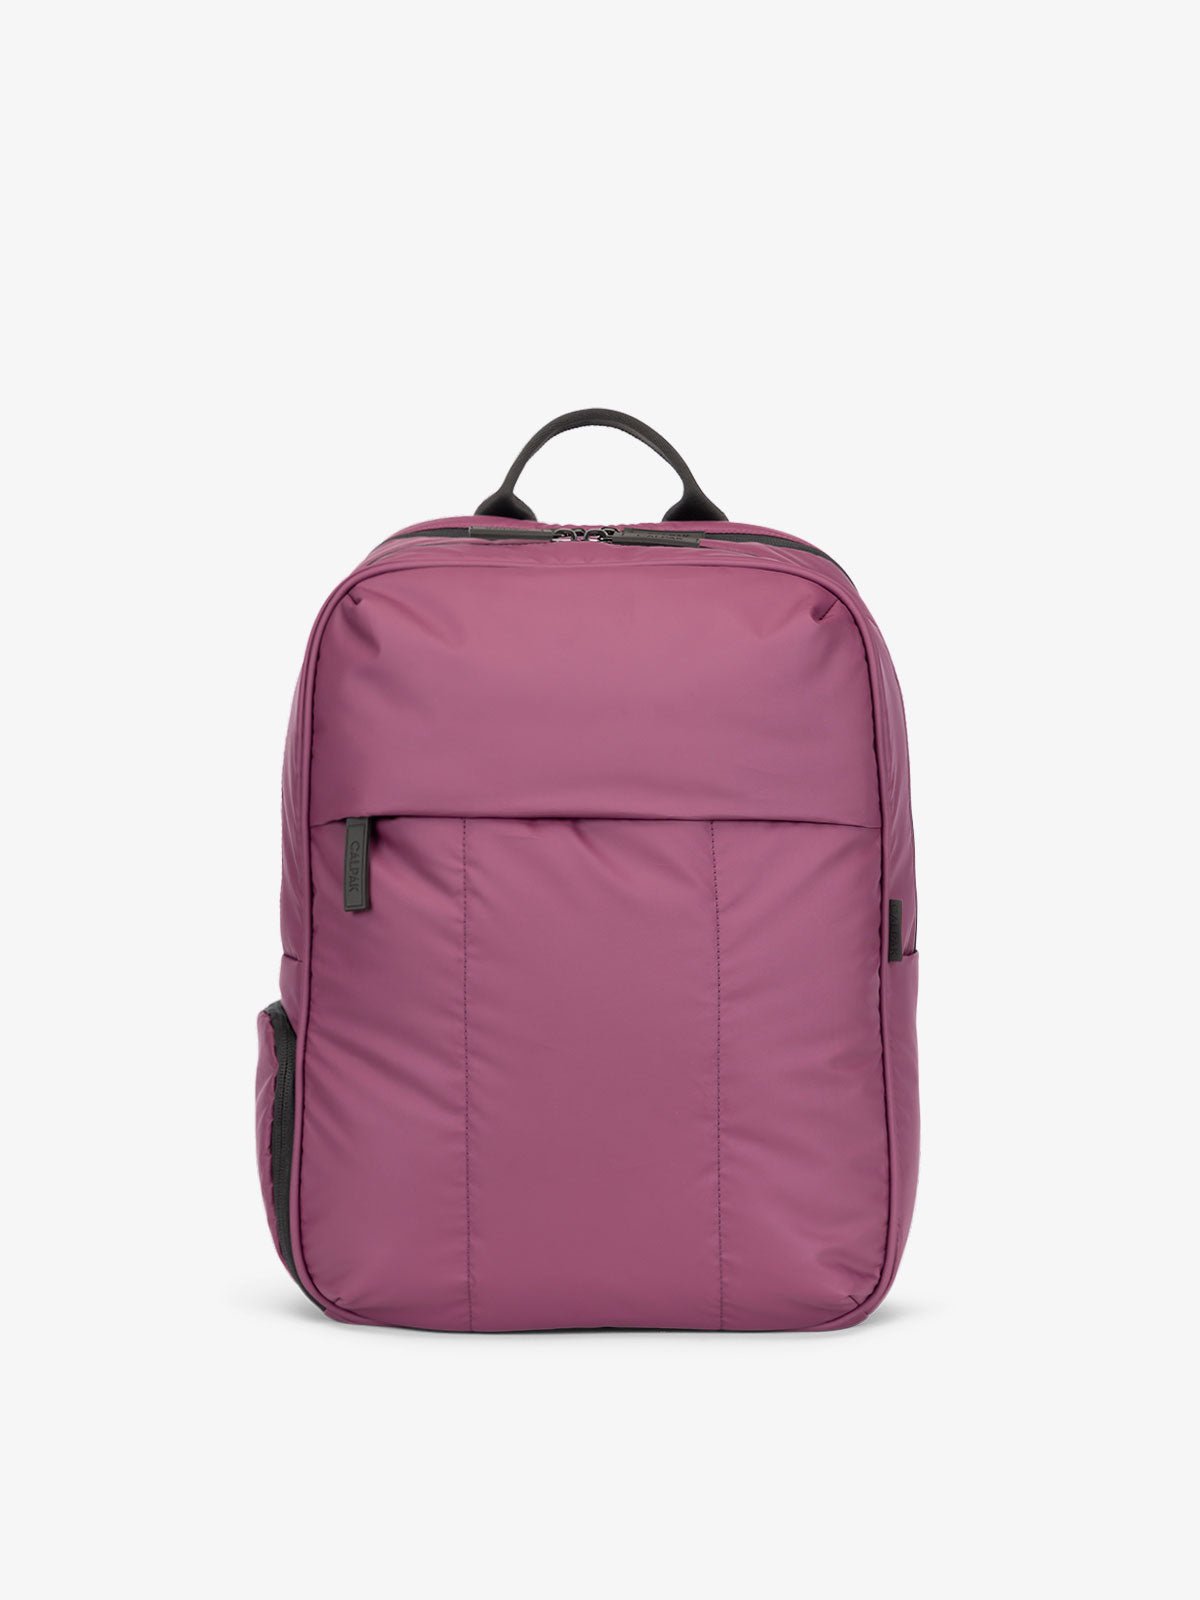 CALPAK Luka Laptop Backpack for women in purple plum